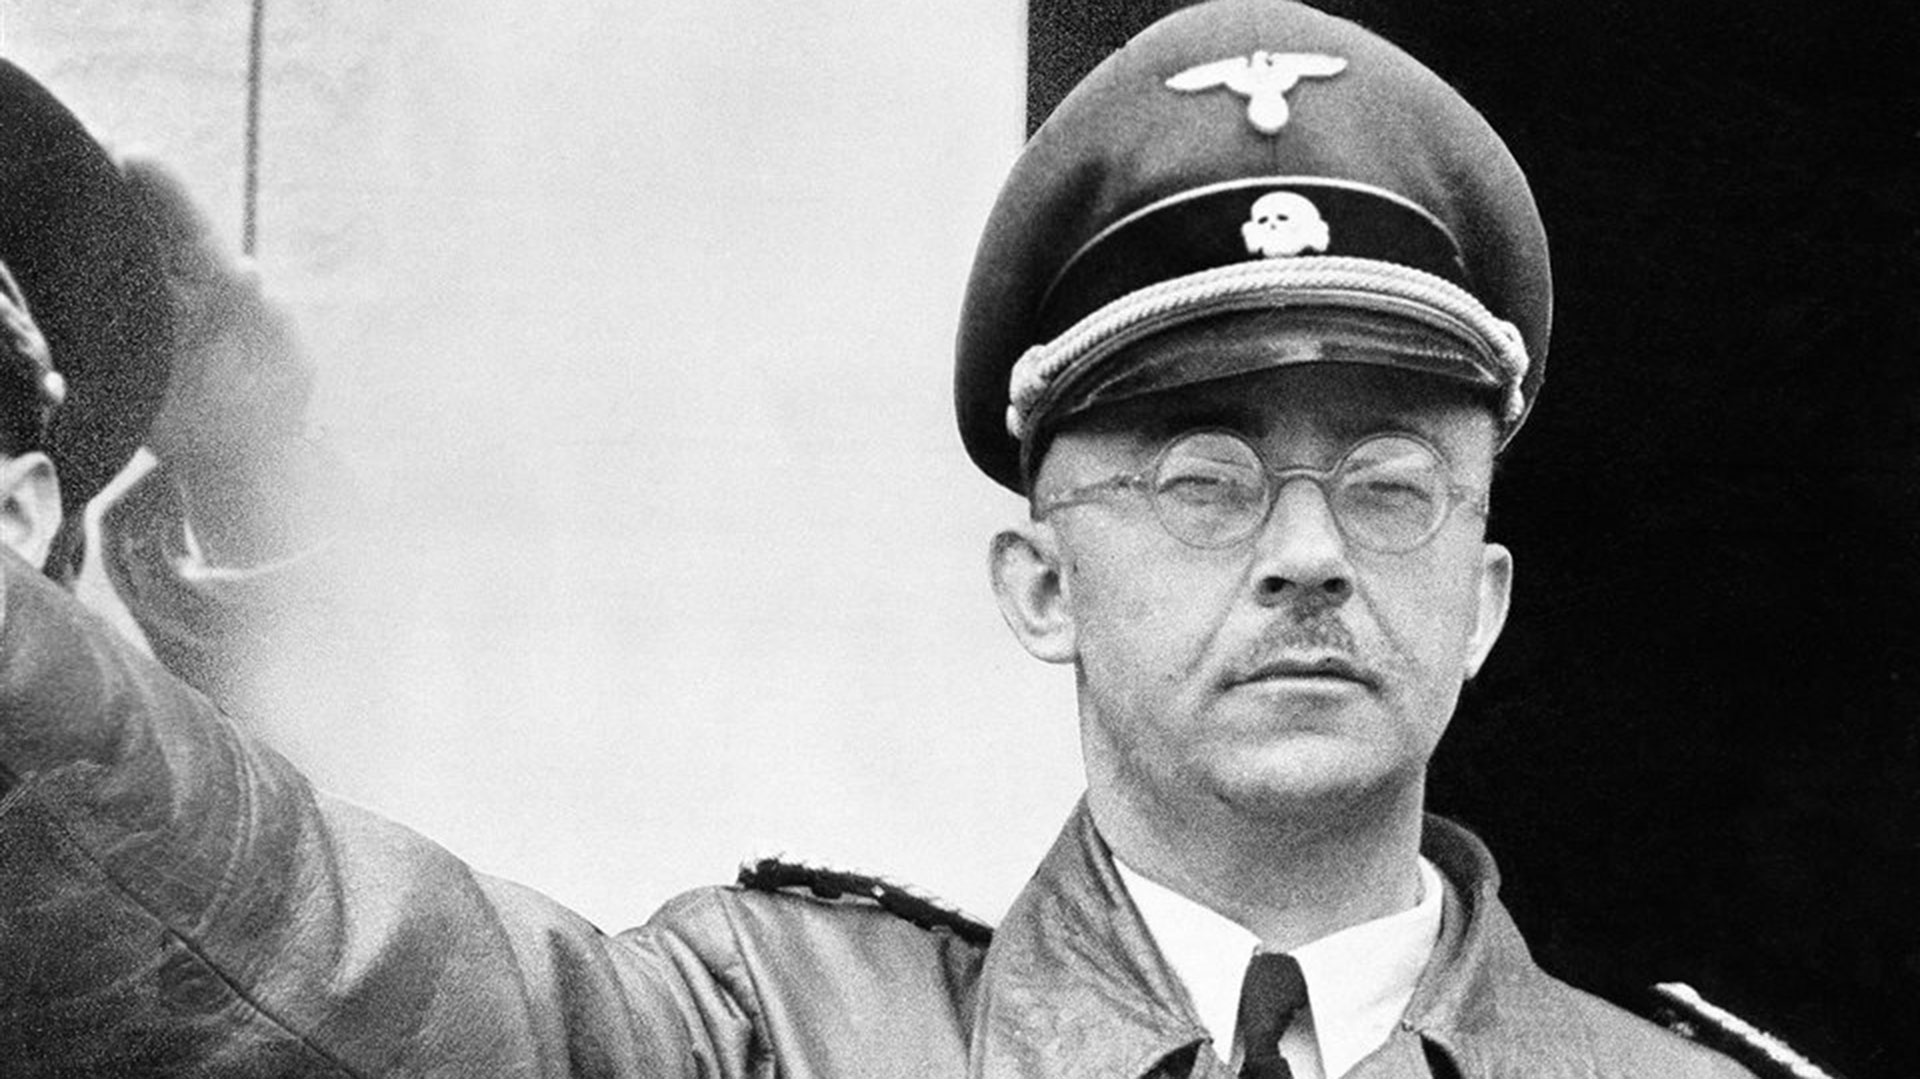 Himmler llevó a cabo los planes genocidas de Hitler y del Tercer Reich. Creó el sistema de campos de concentración y desarrolló los campos de exterminio